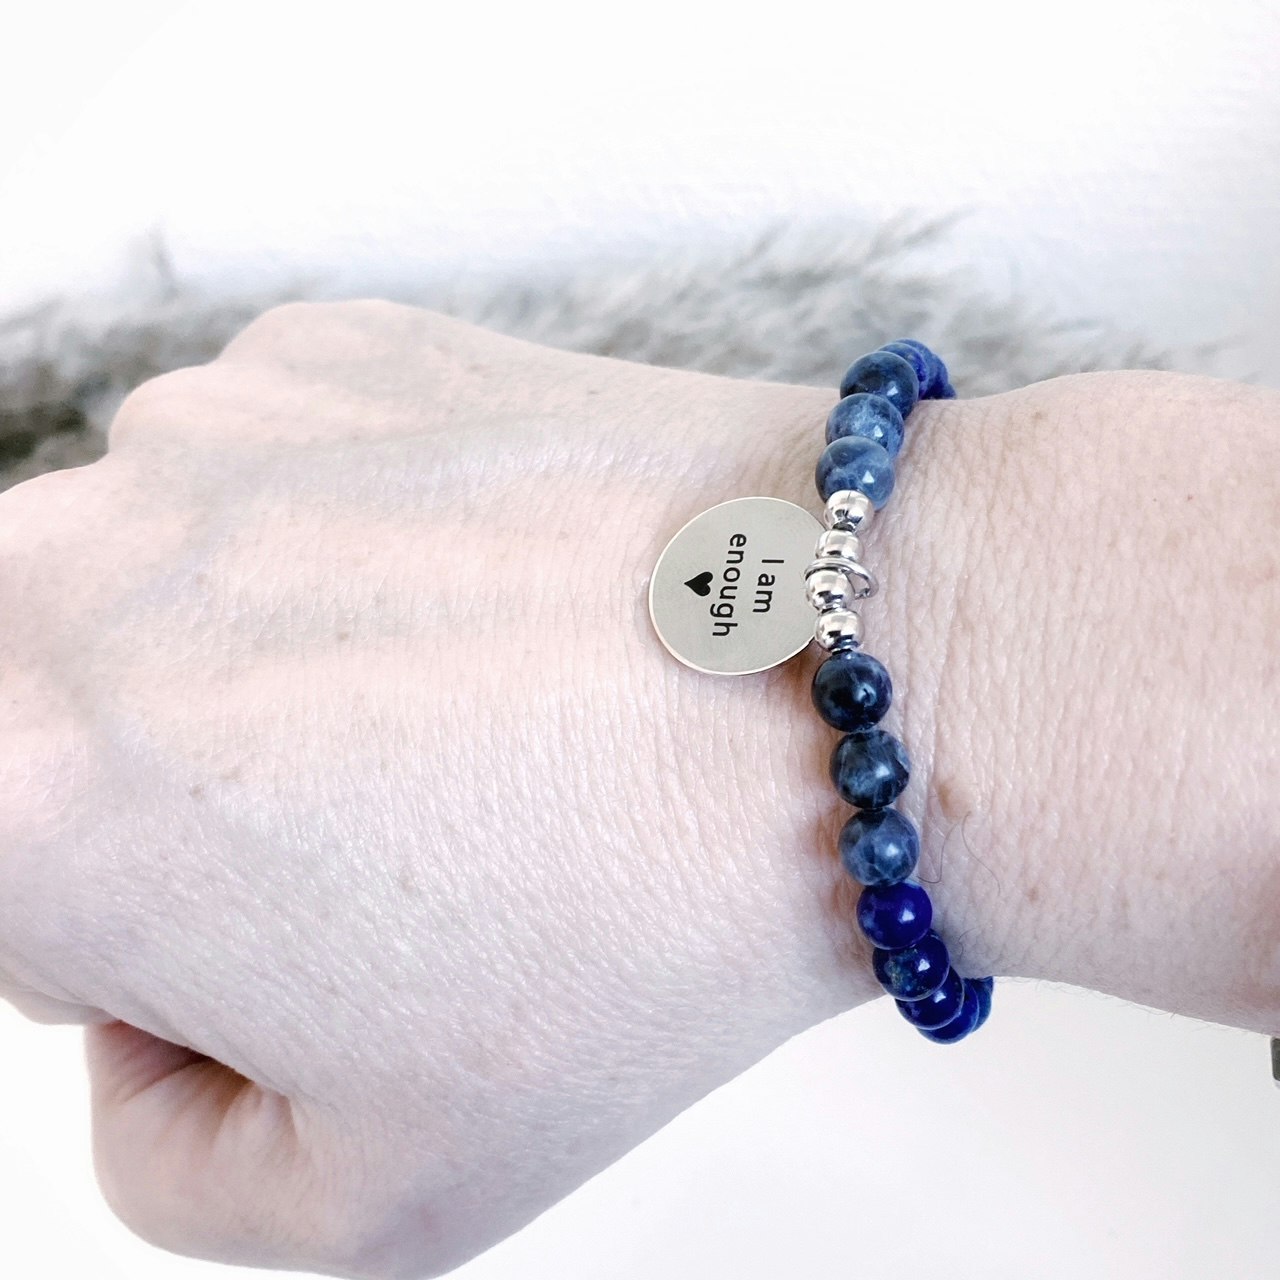 Budskapsarmbandet Self power med stenen Lapis lazuli och sodalit med en graverad textberlock i rostfitt stål och hur armbandet sitter på armen.